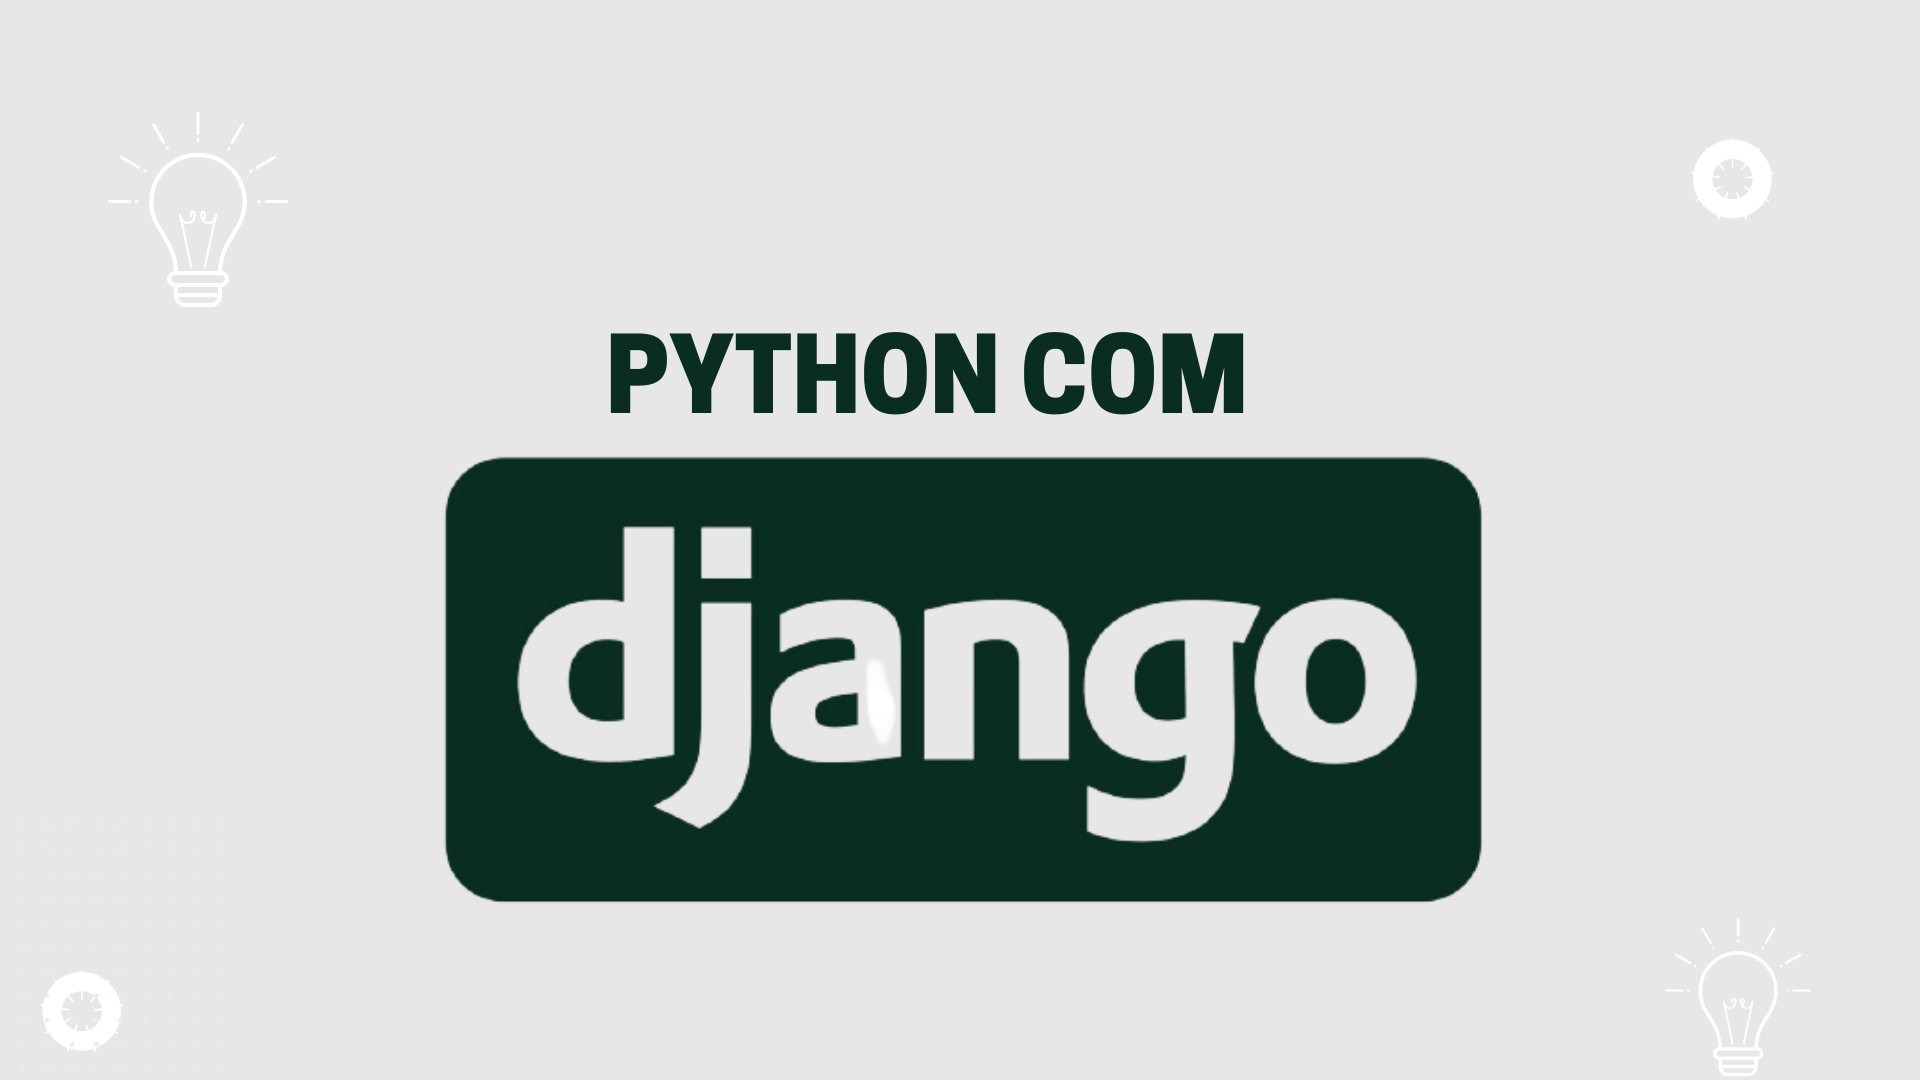 Python com Django